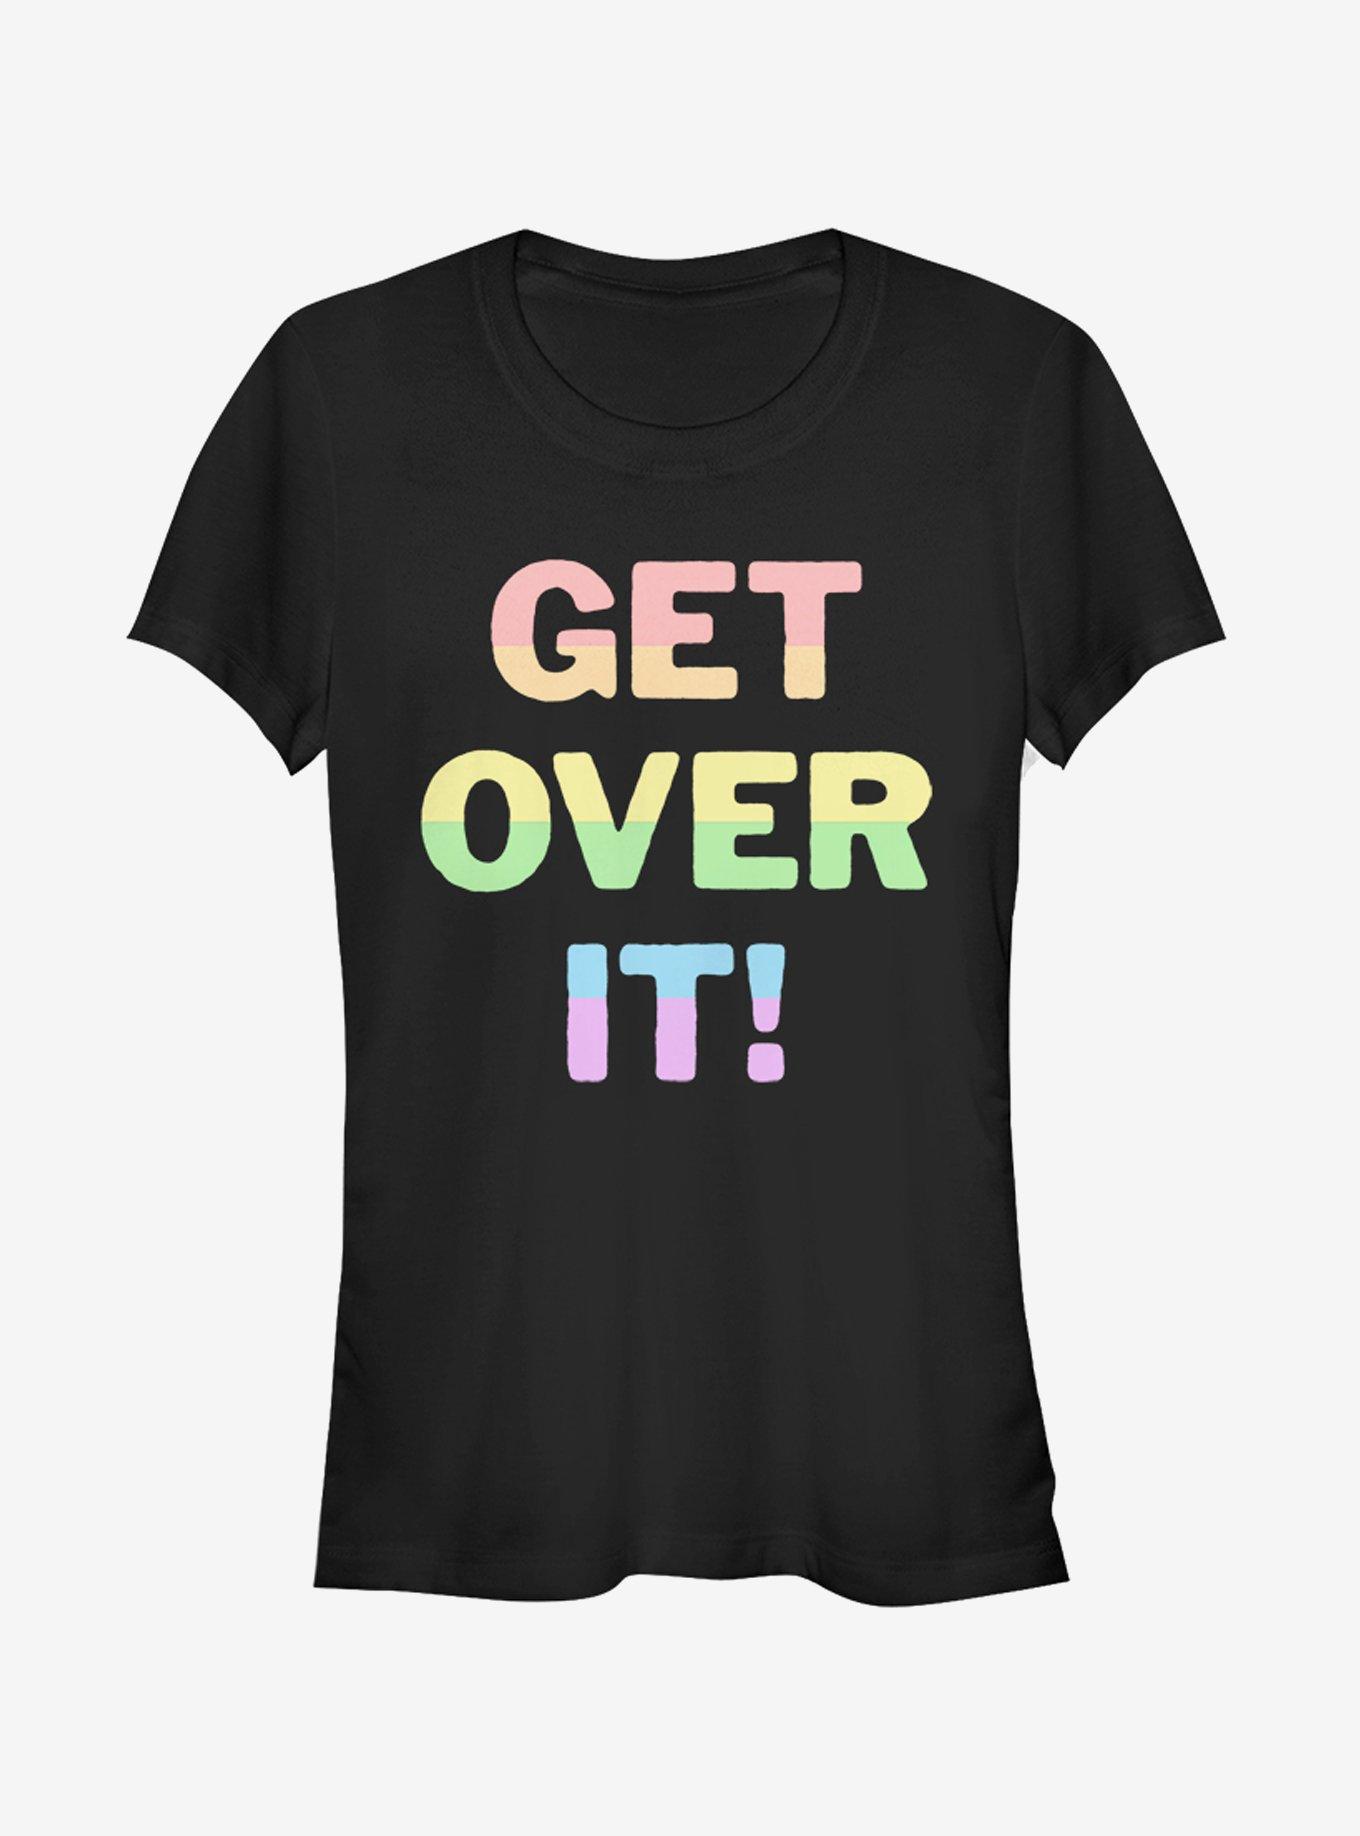 Get Over It Girl's Tee